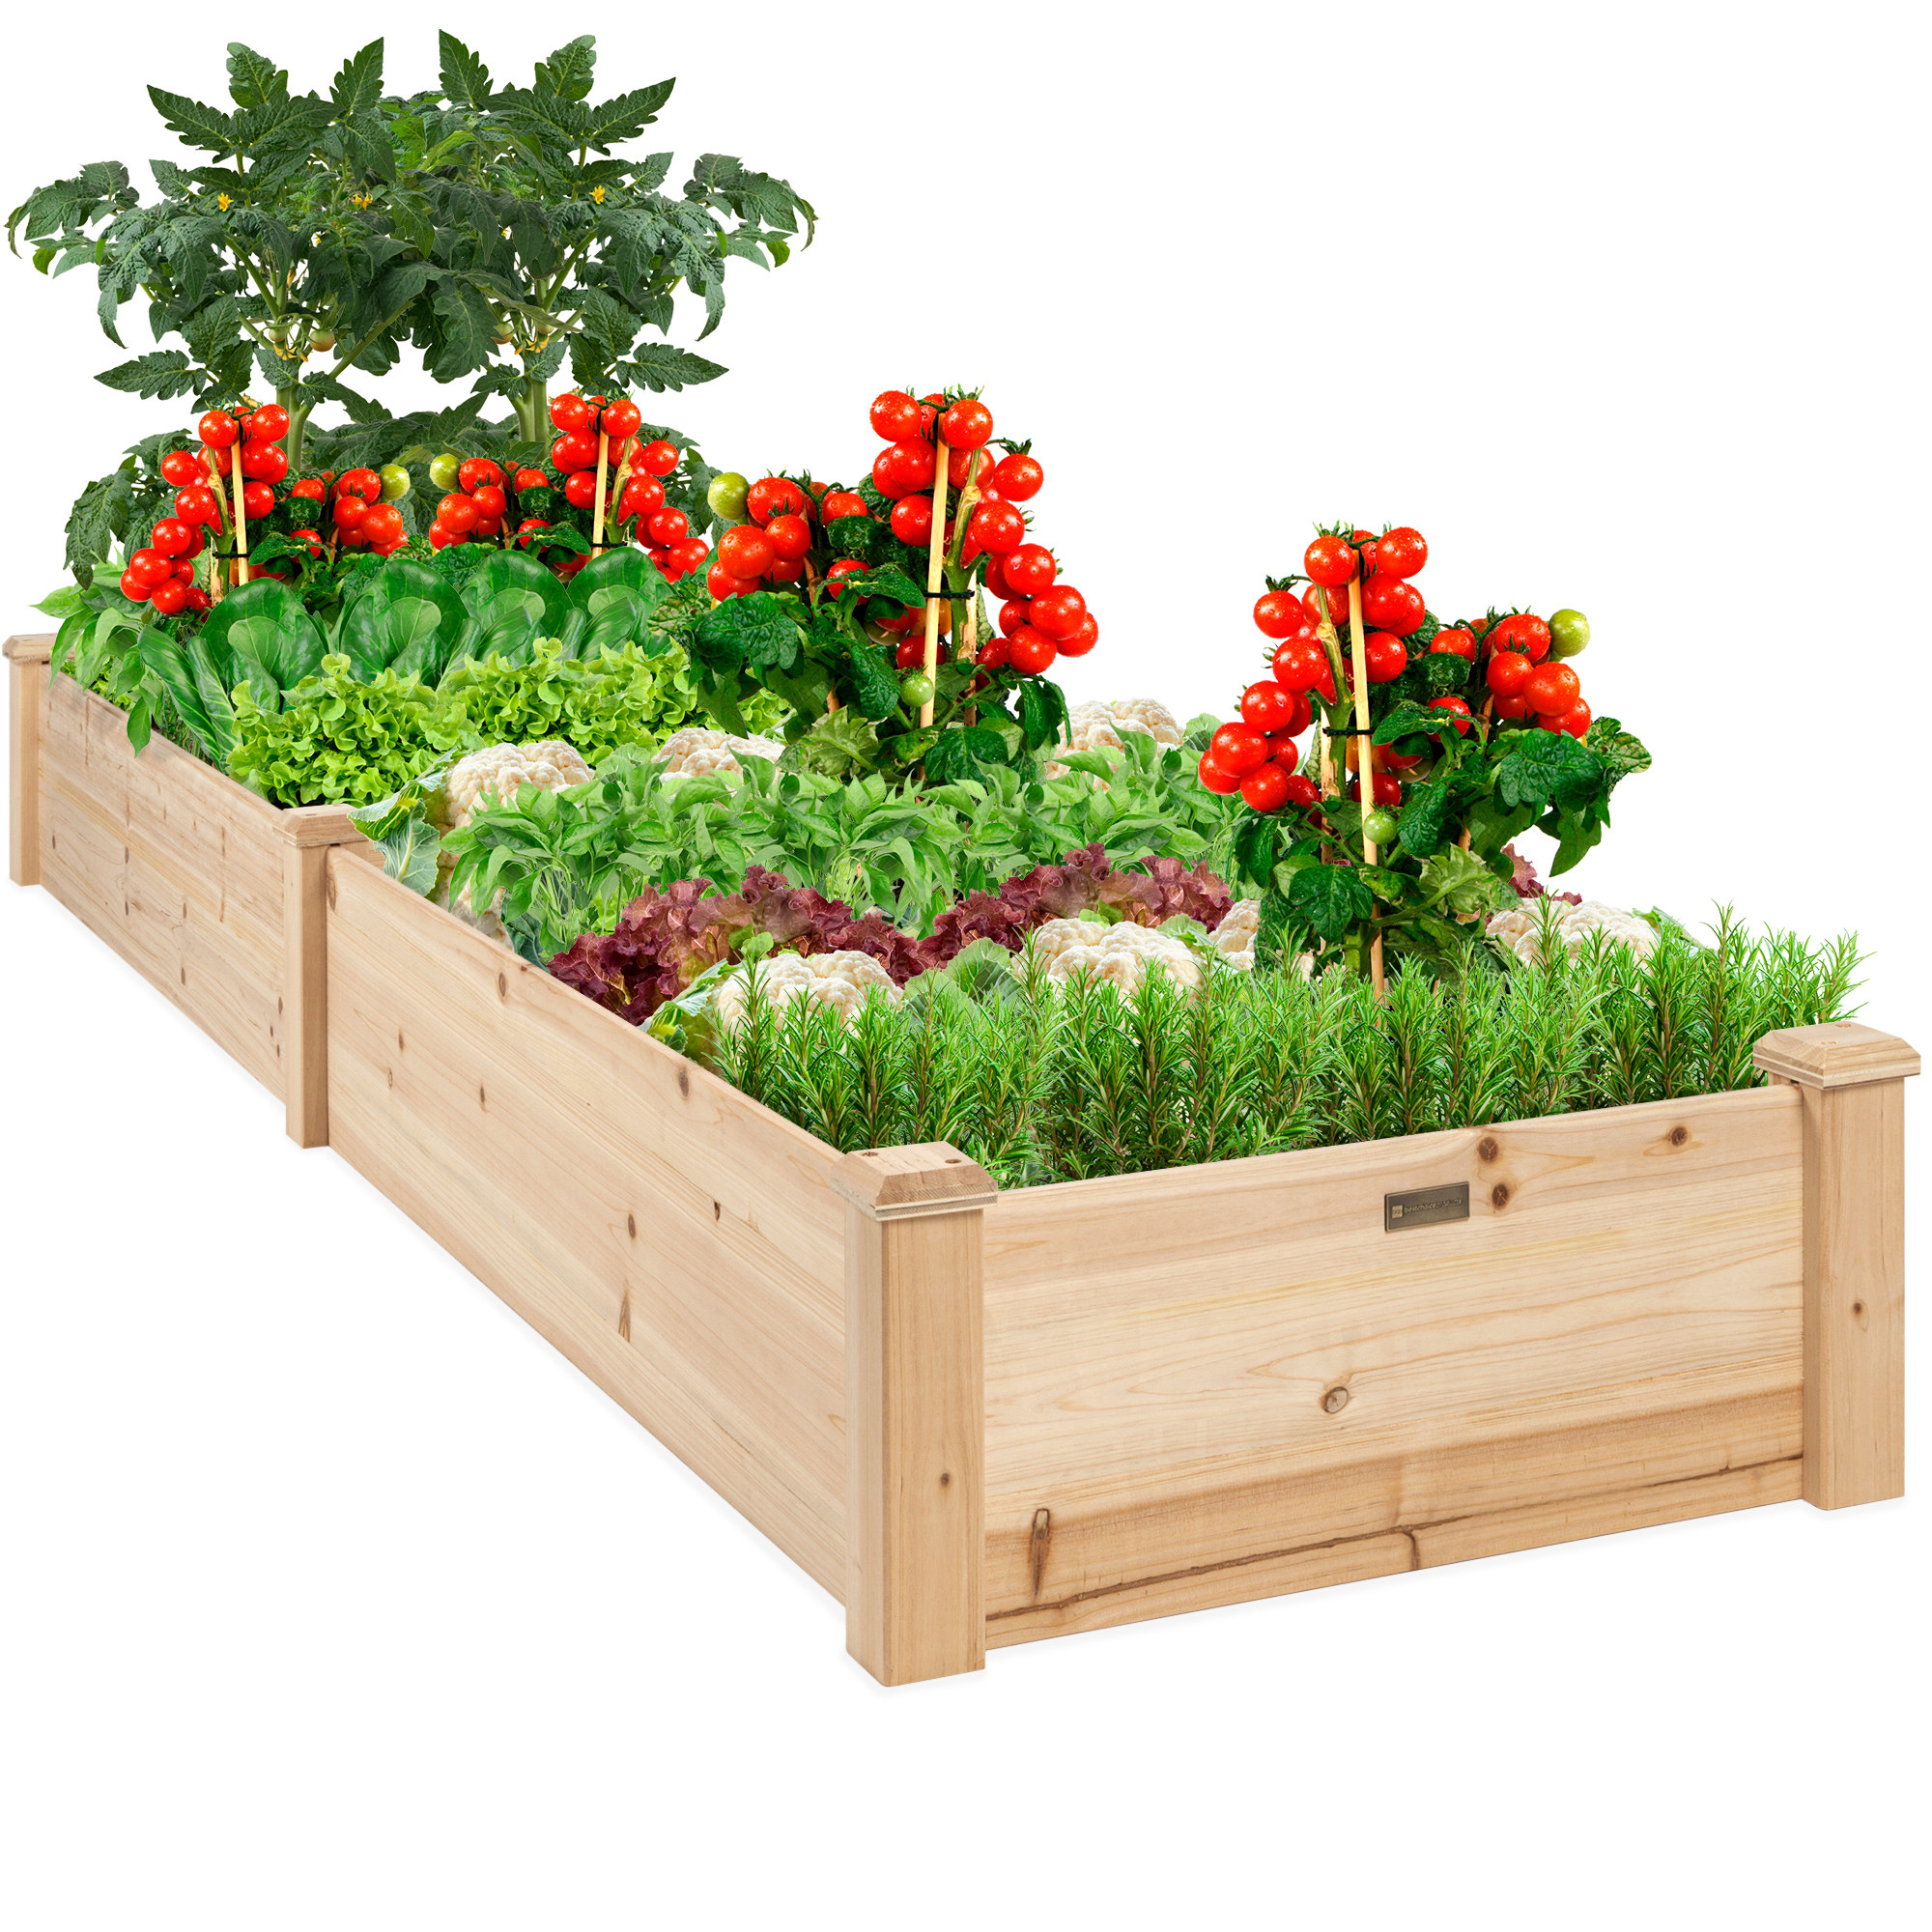 wood raised garden beds full of vegetables